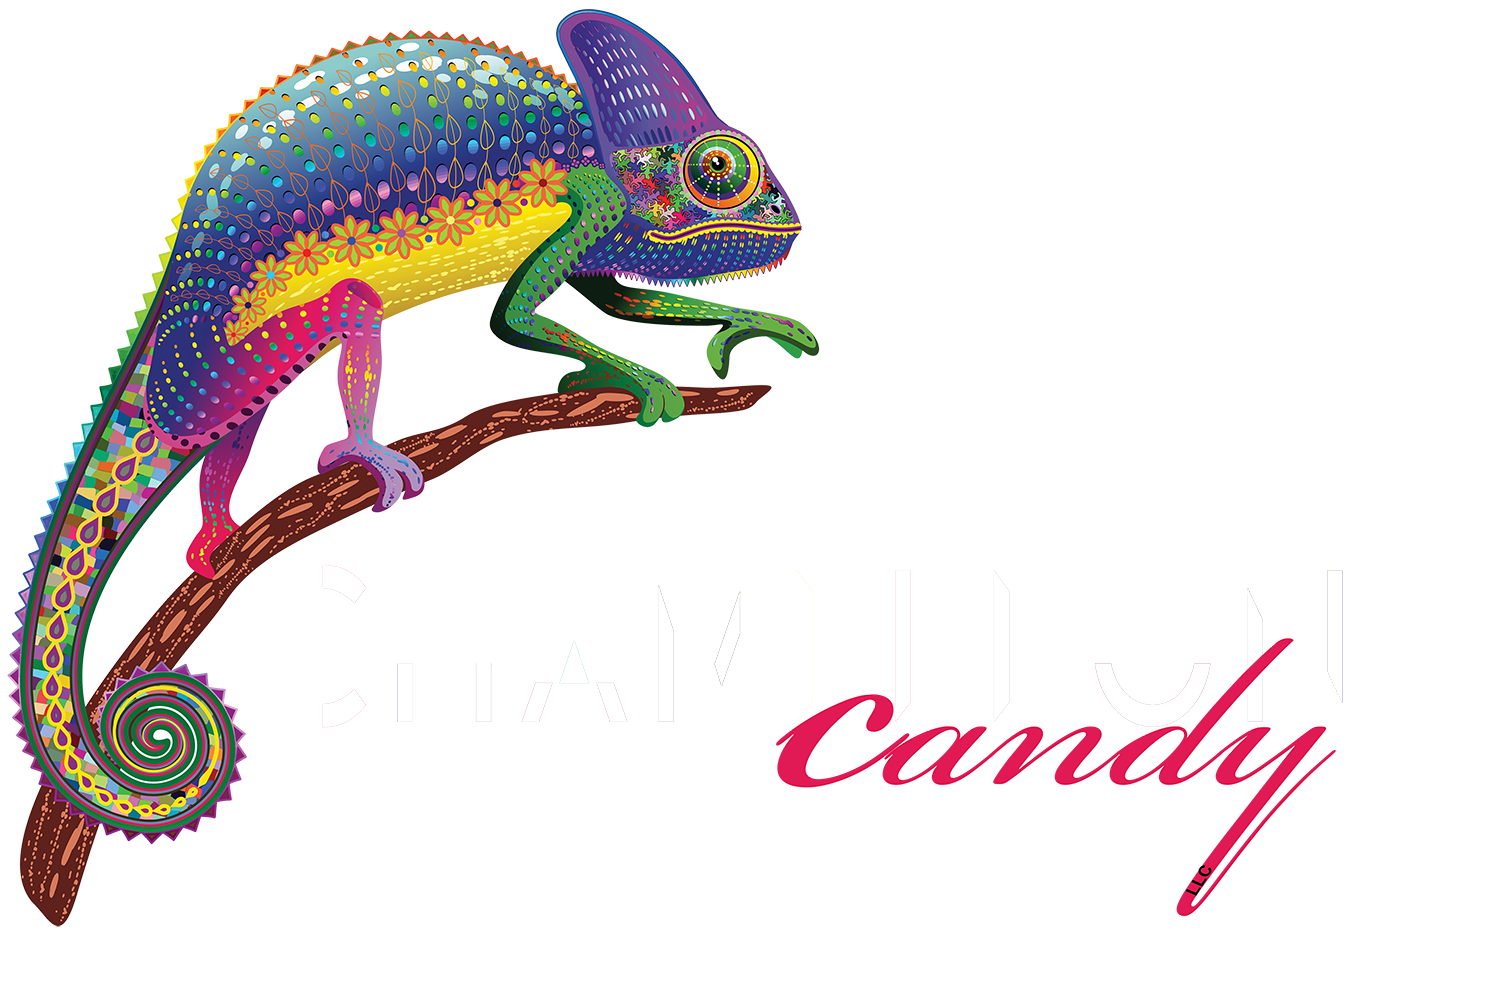 gecko clipart chameleon